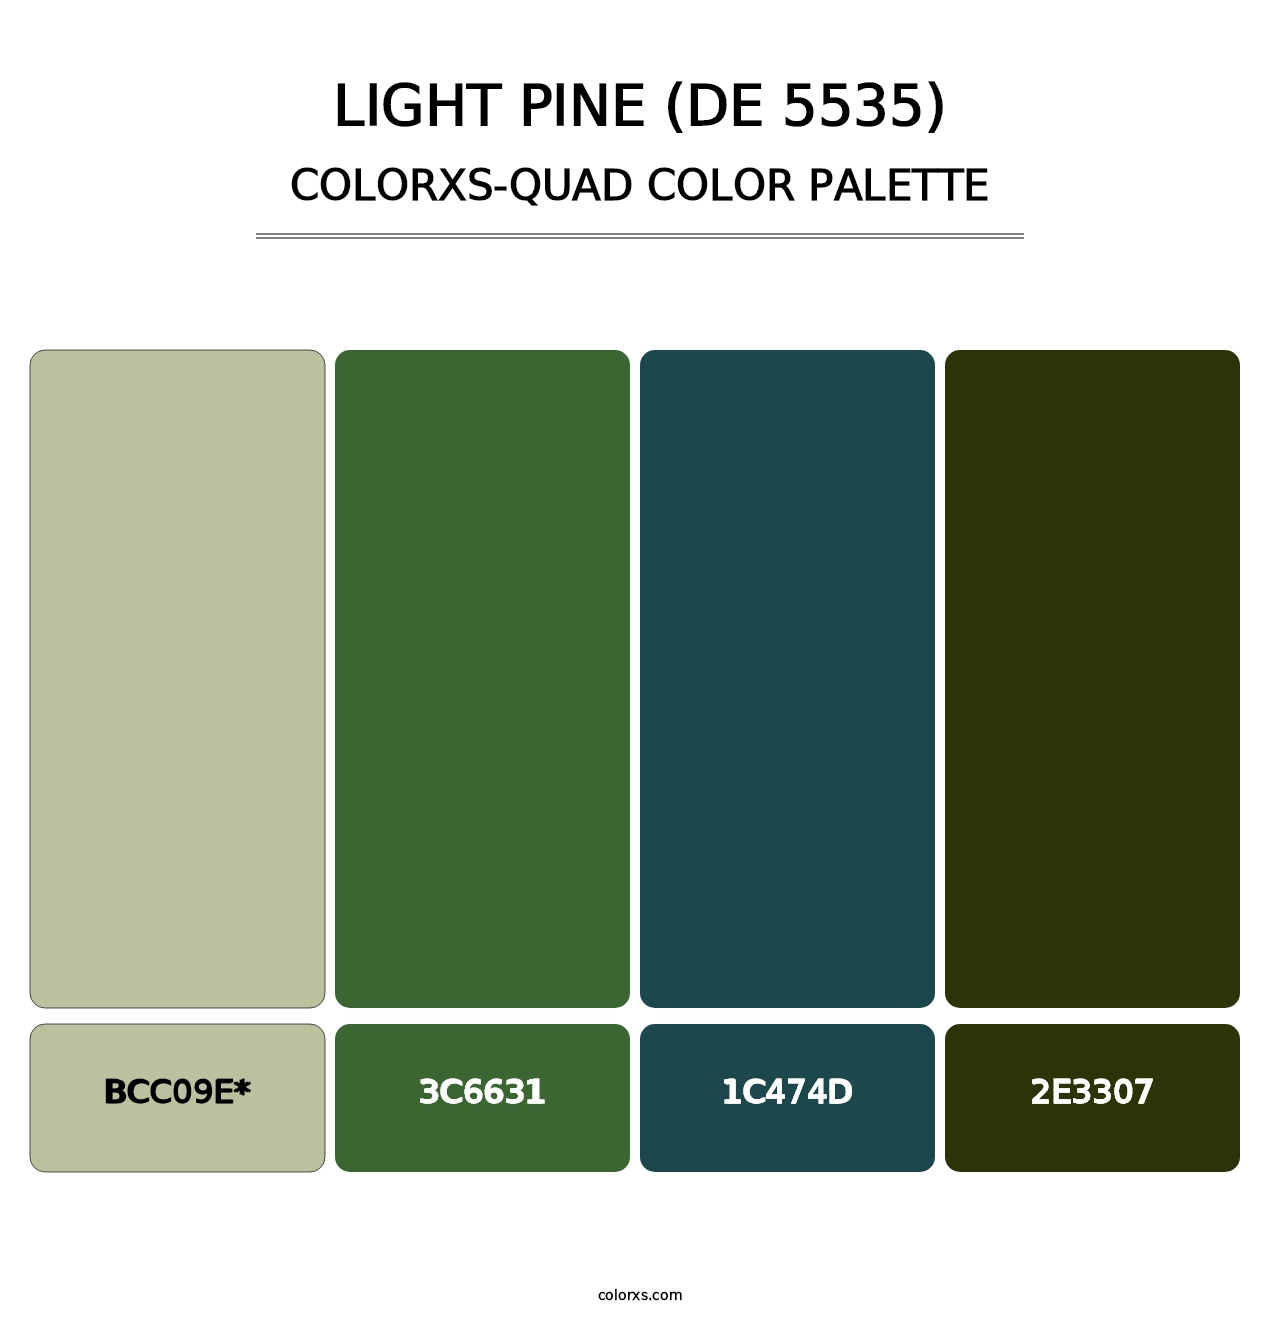 Light Pine (DE 5535) - Colorxs Quad Palette